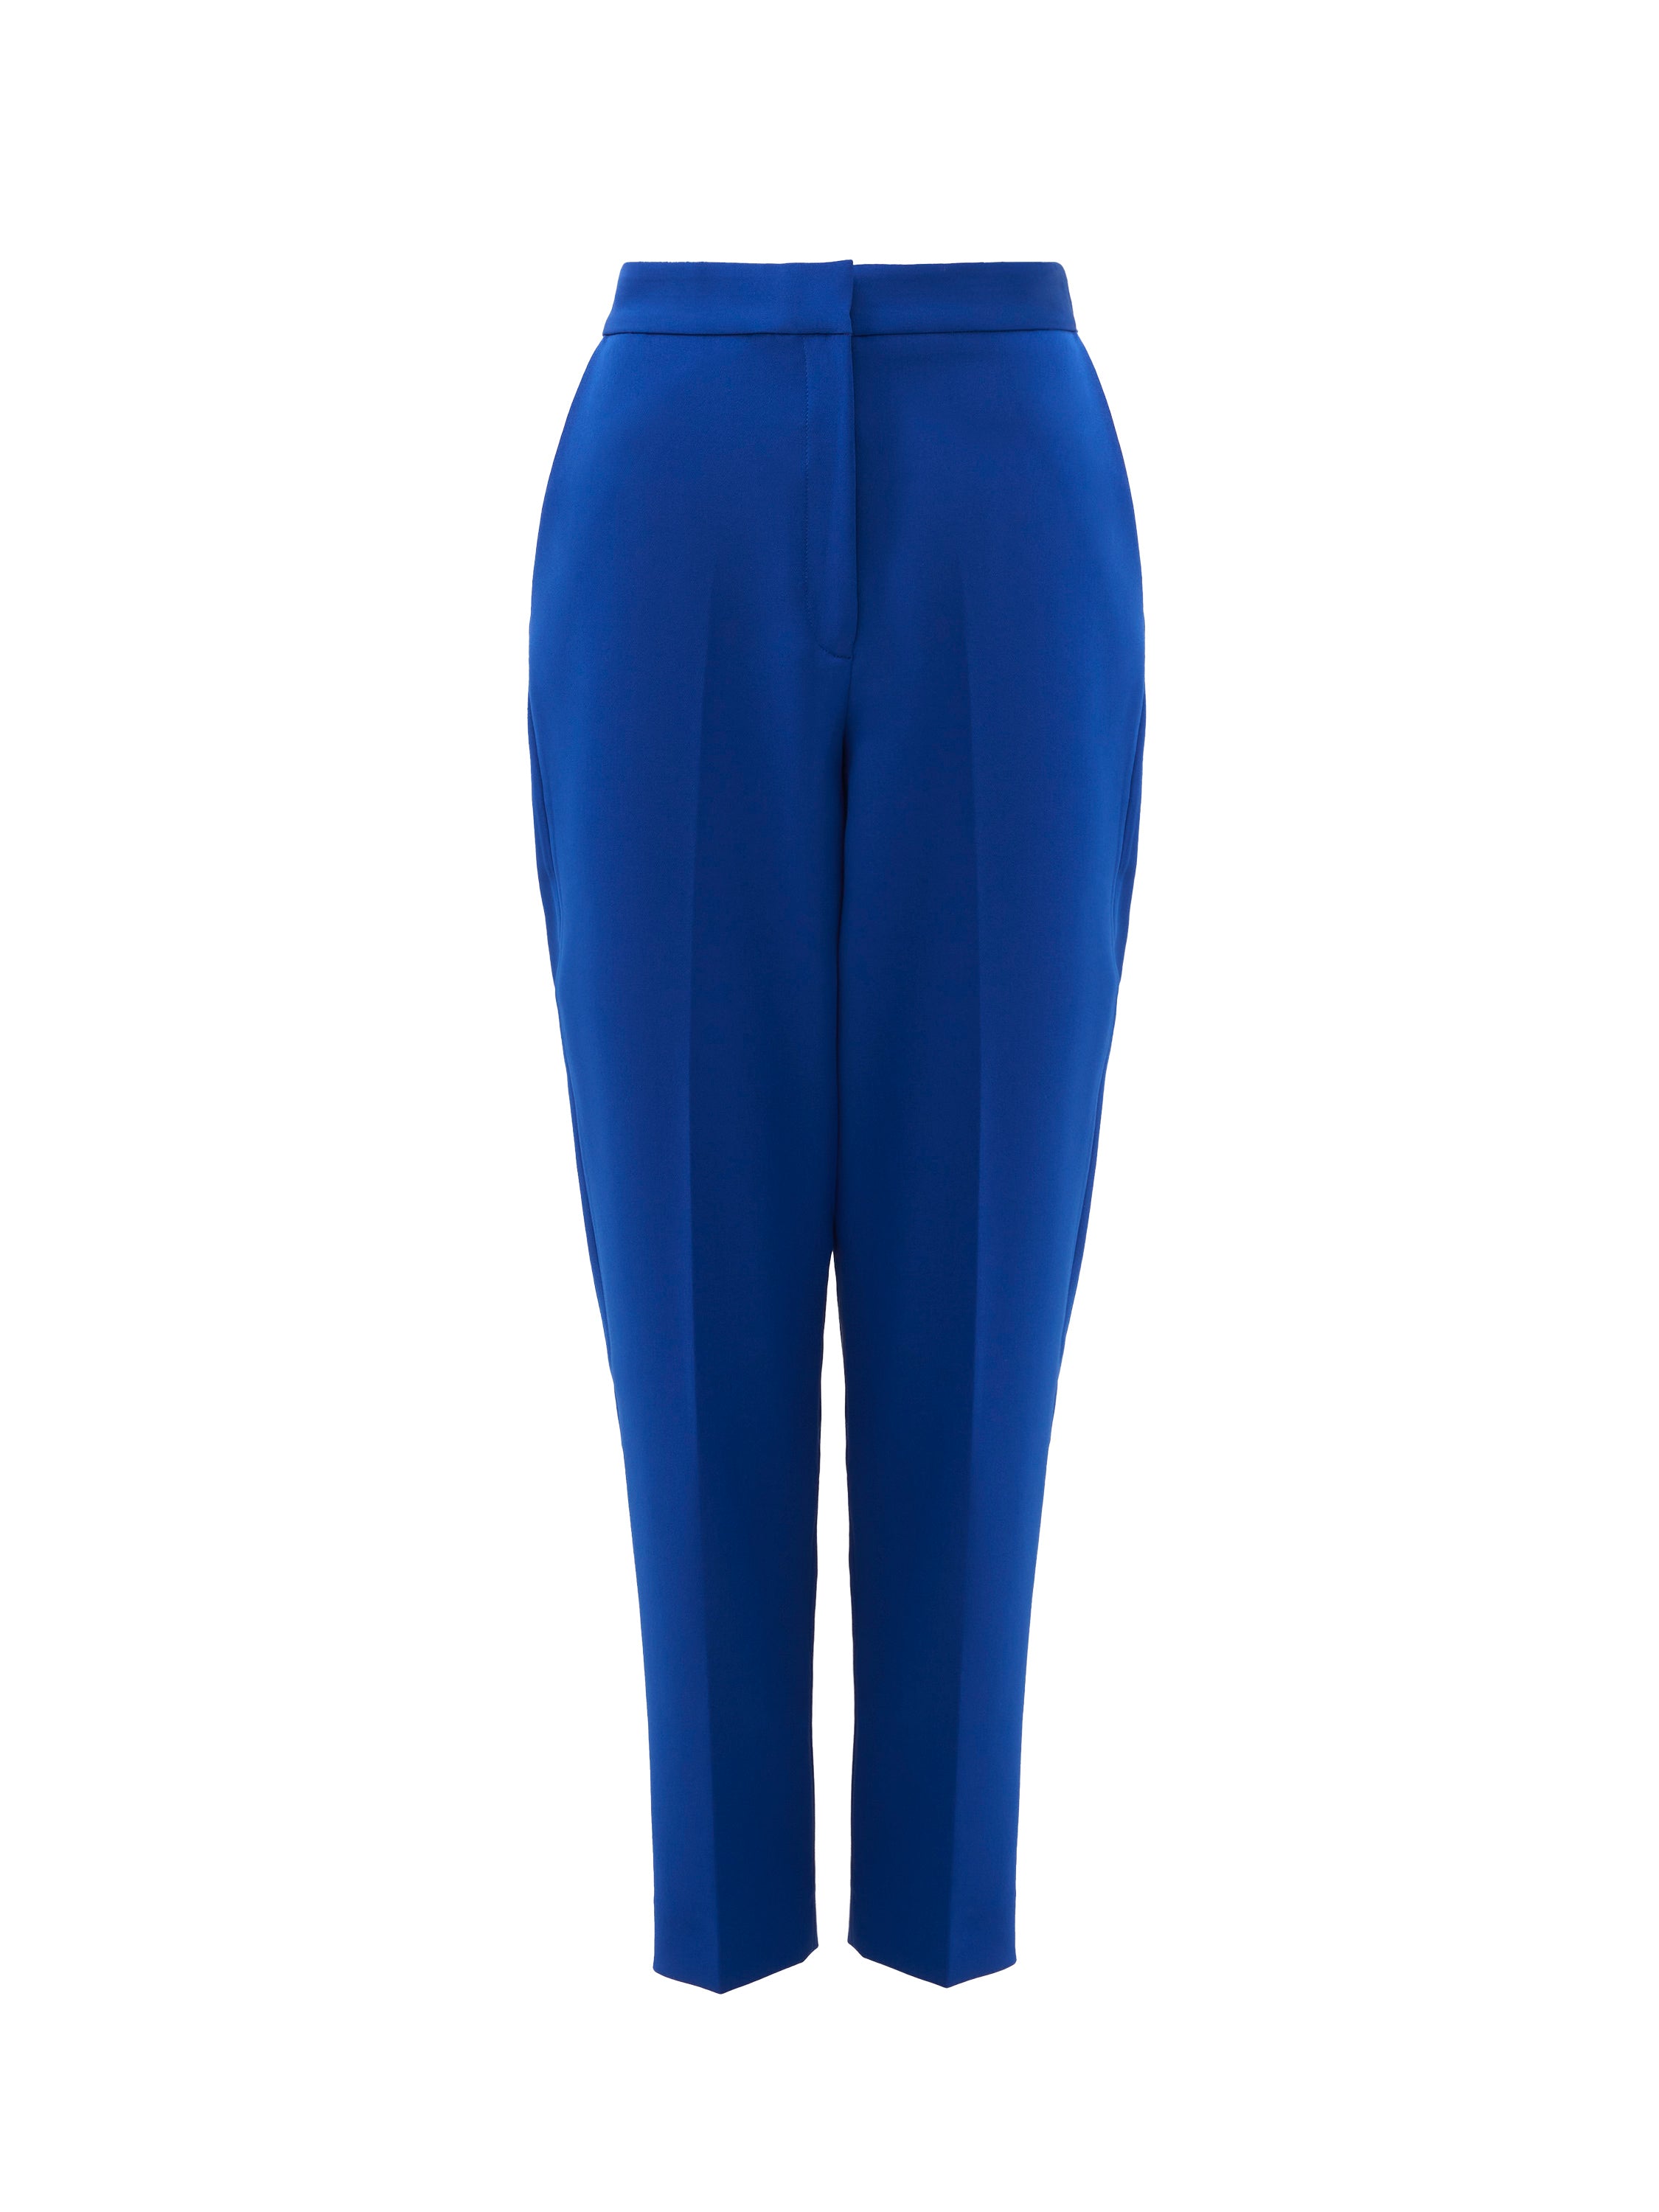 Unique21 Petite tailored trousers in cobalt blue